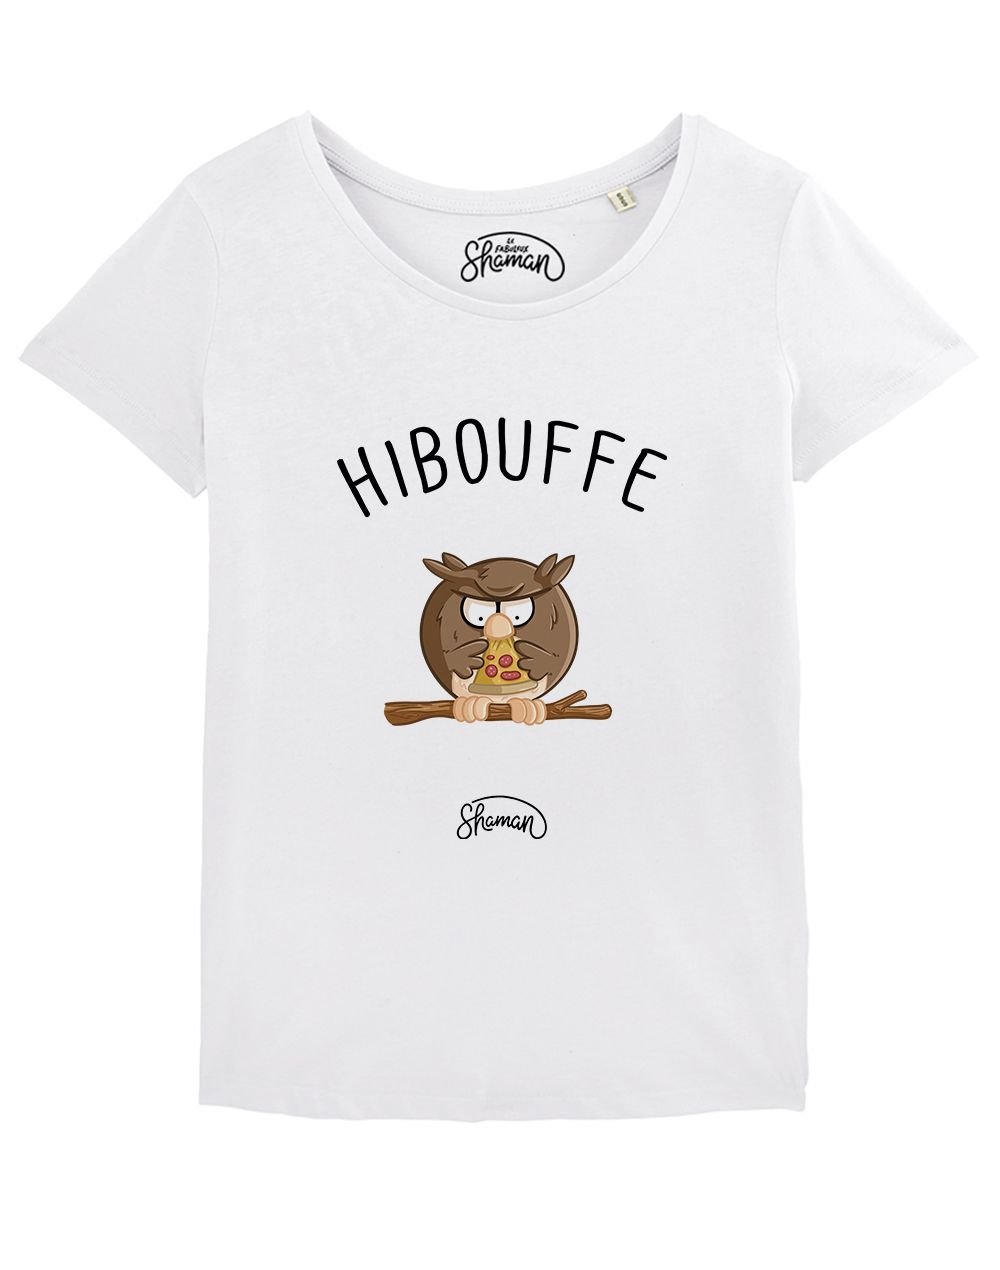 T-shirt "Hibouffe"